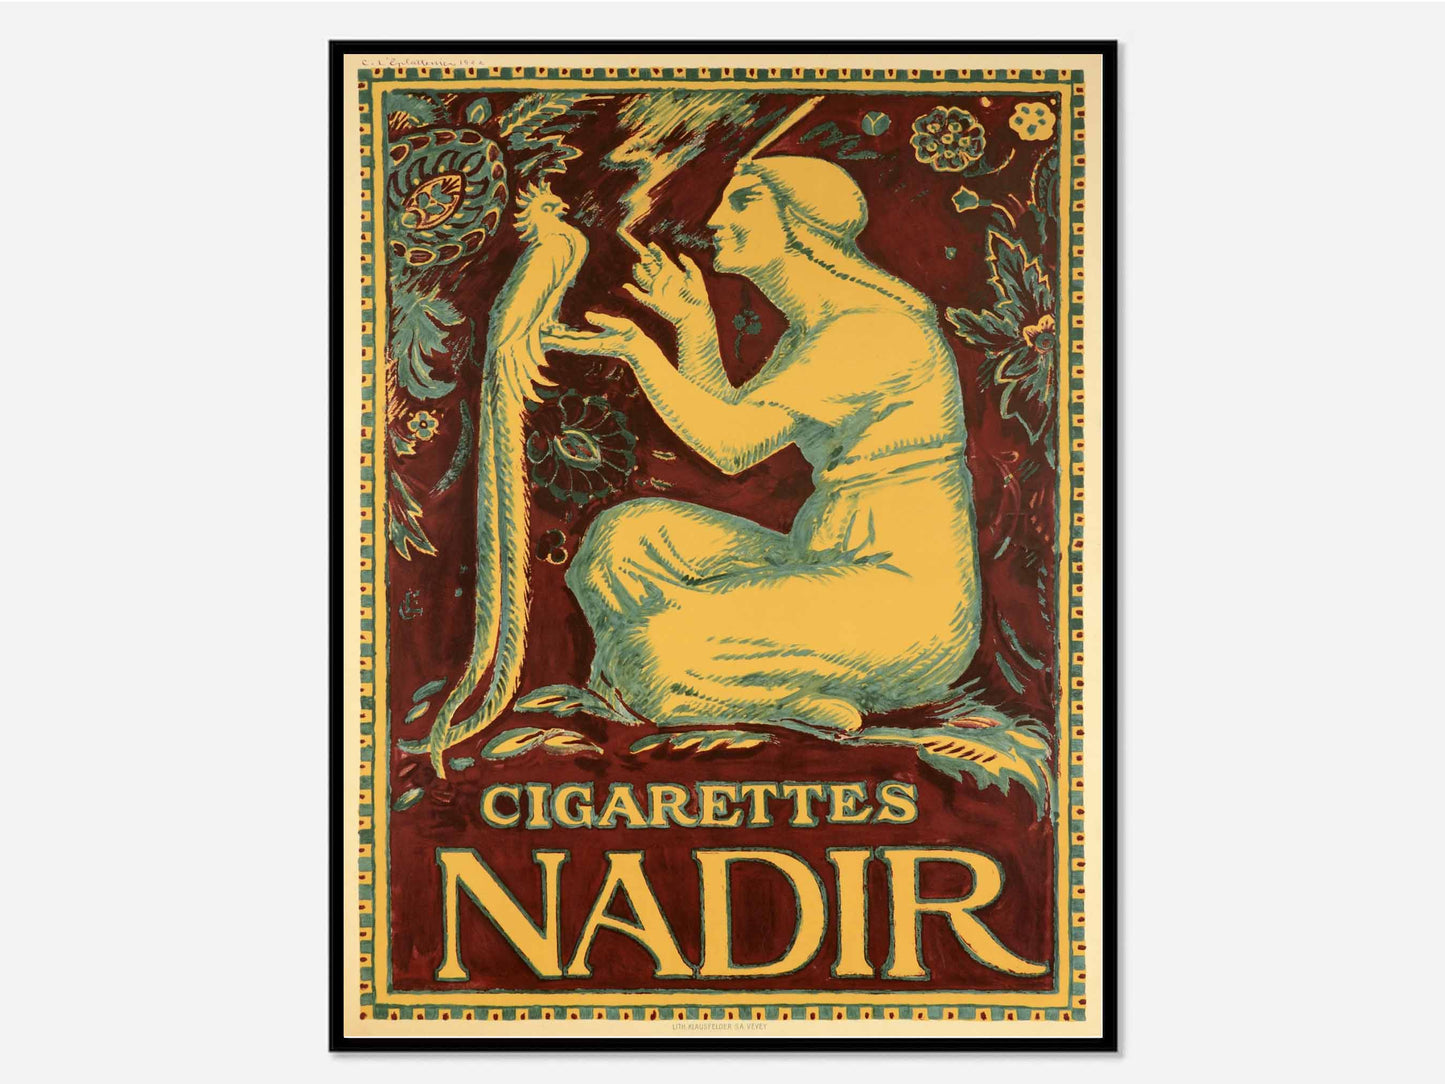 Cigarettes Nadir